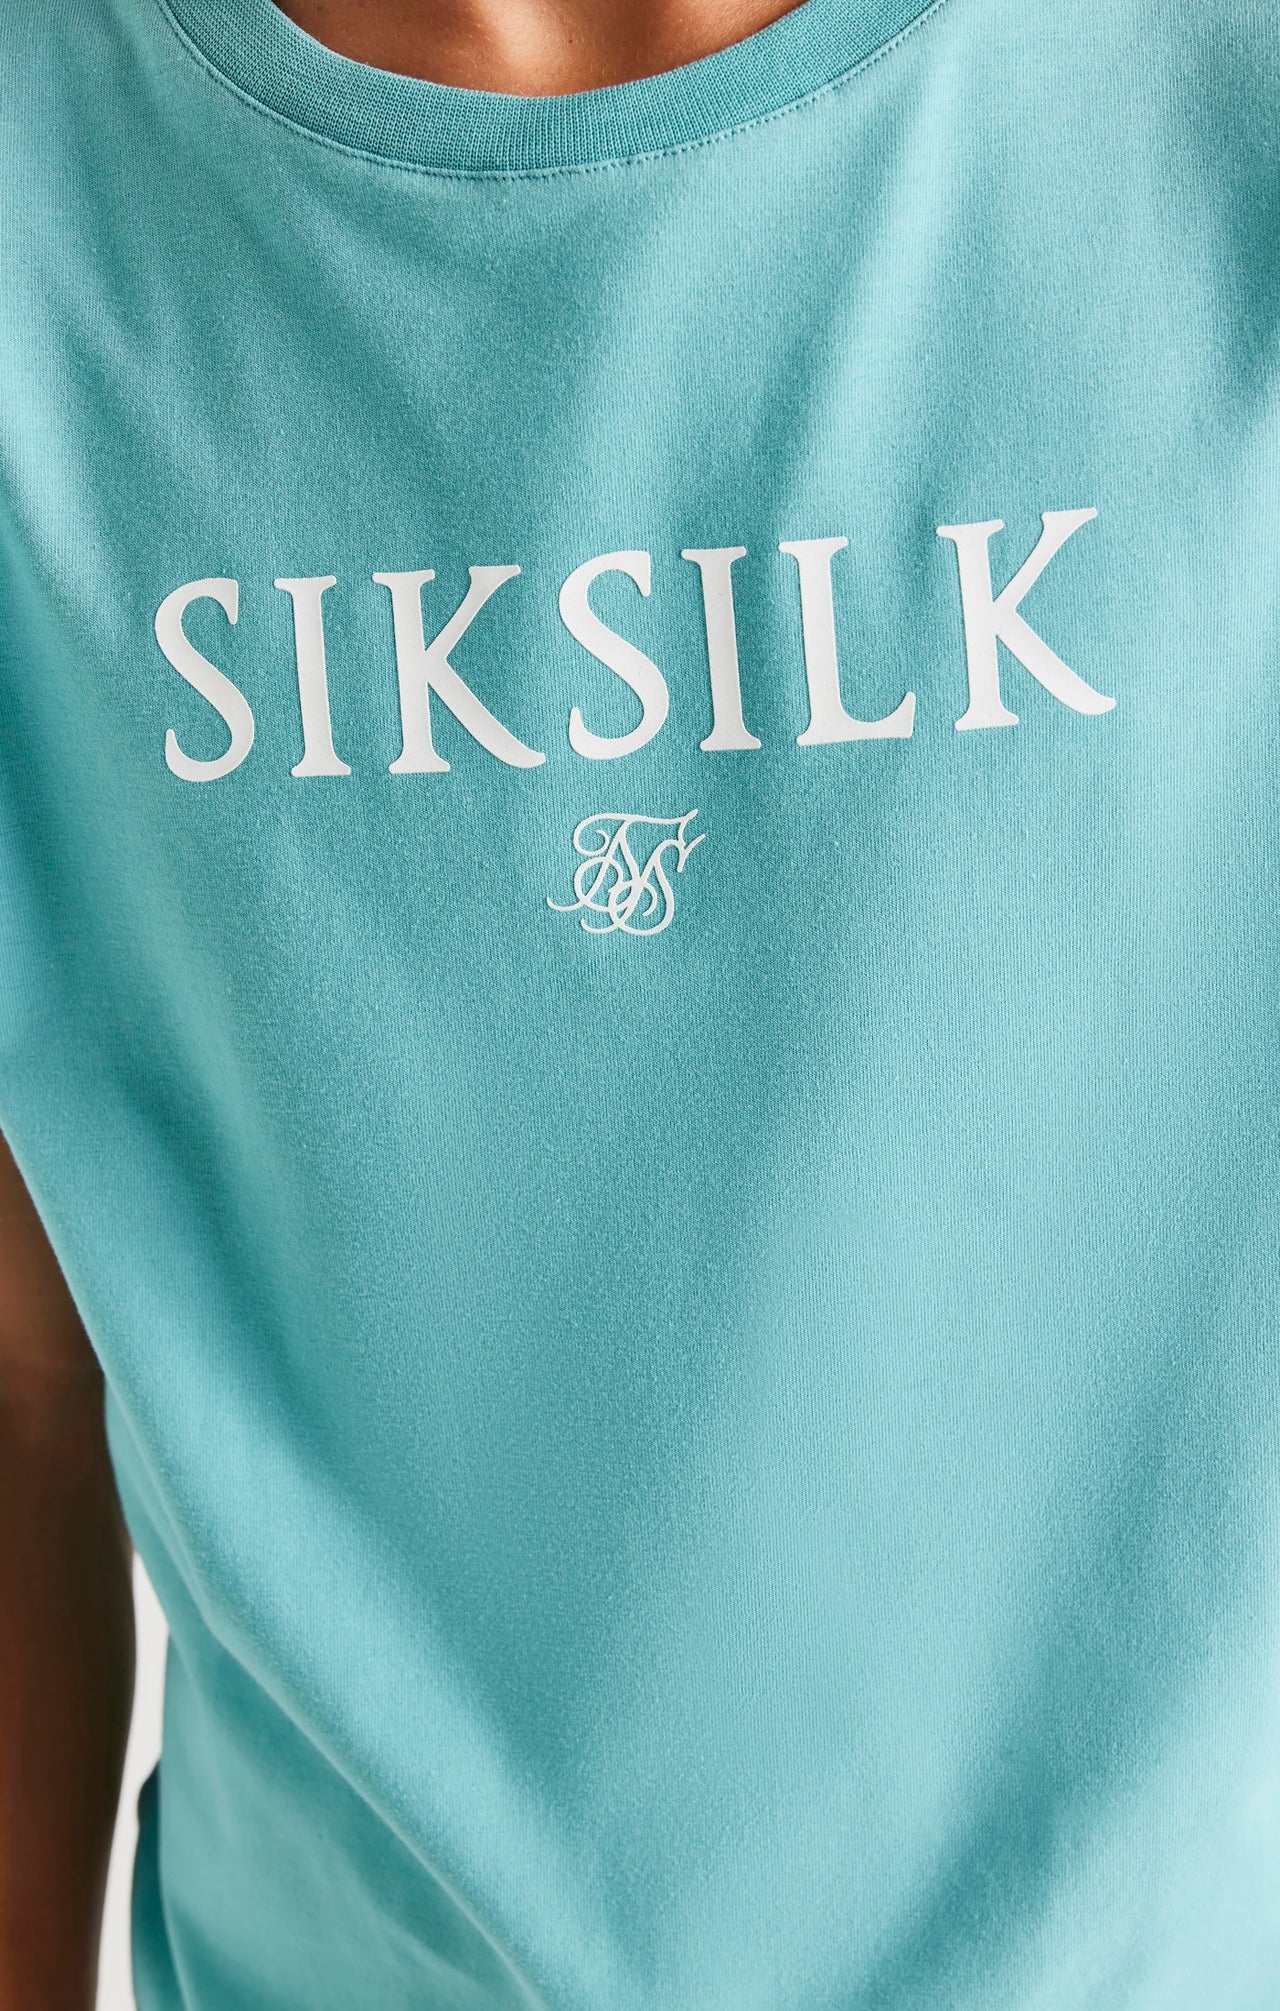 SikSilk Branded Tee - Teal (2)